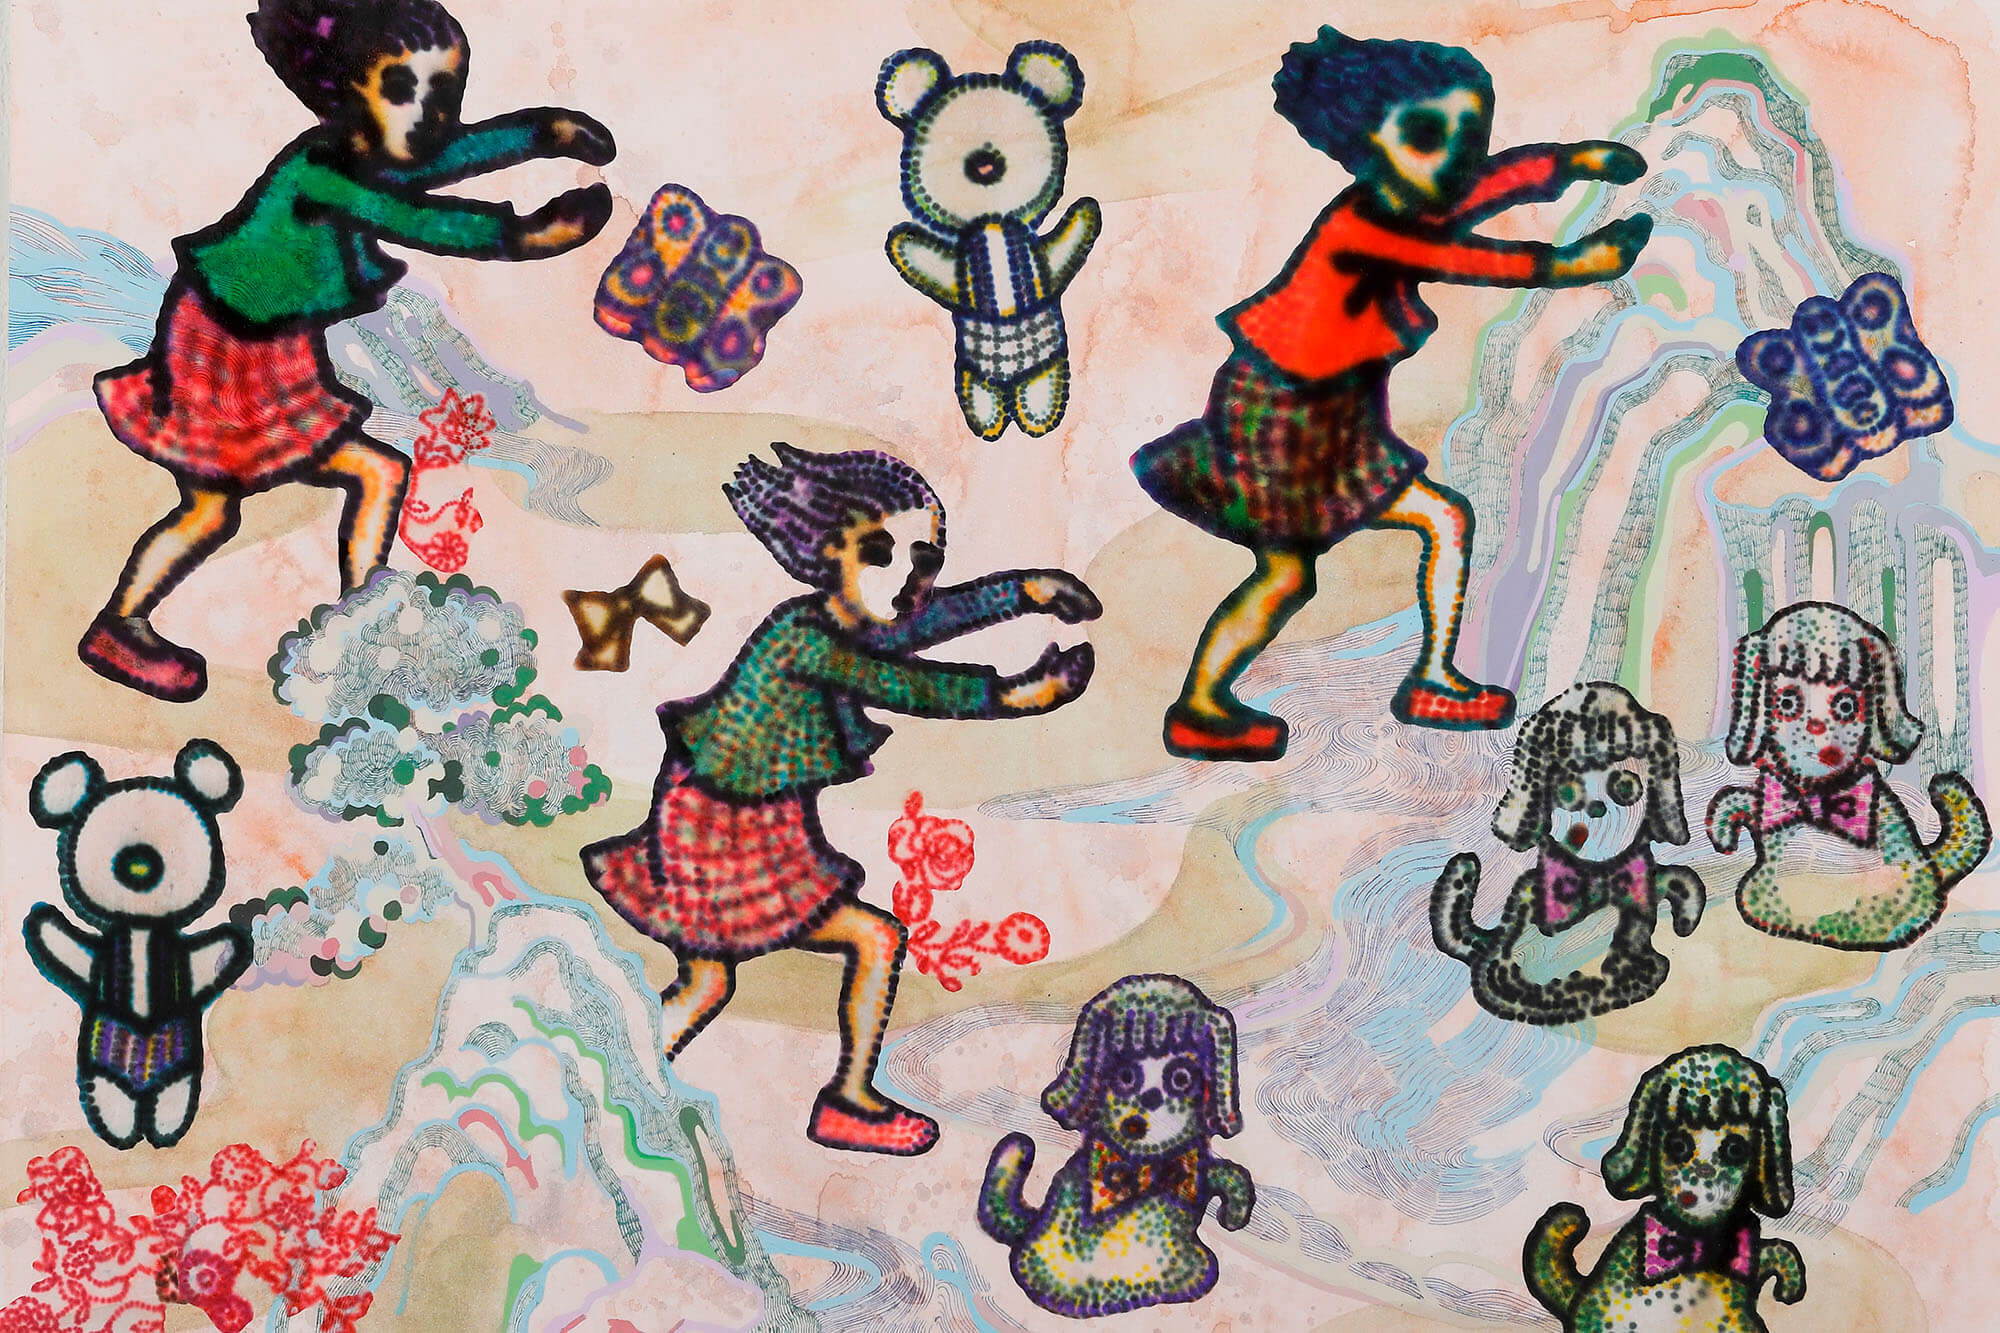 川口奈々子 | Nanako Kawaguchi | abstract balance キュレーション 展覧会 美術・アート企画 オフソサエティ 長田哲征